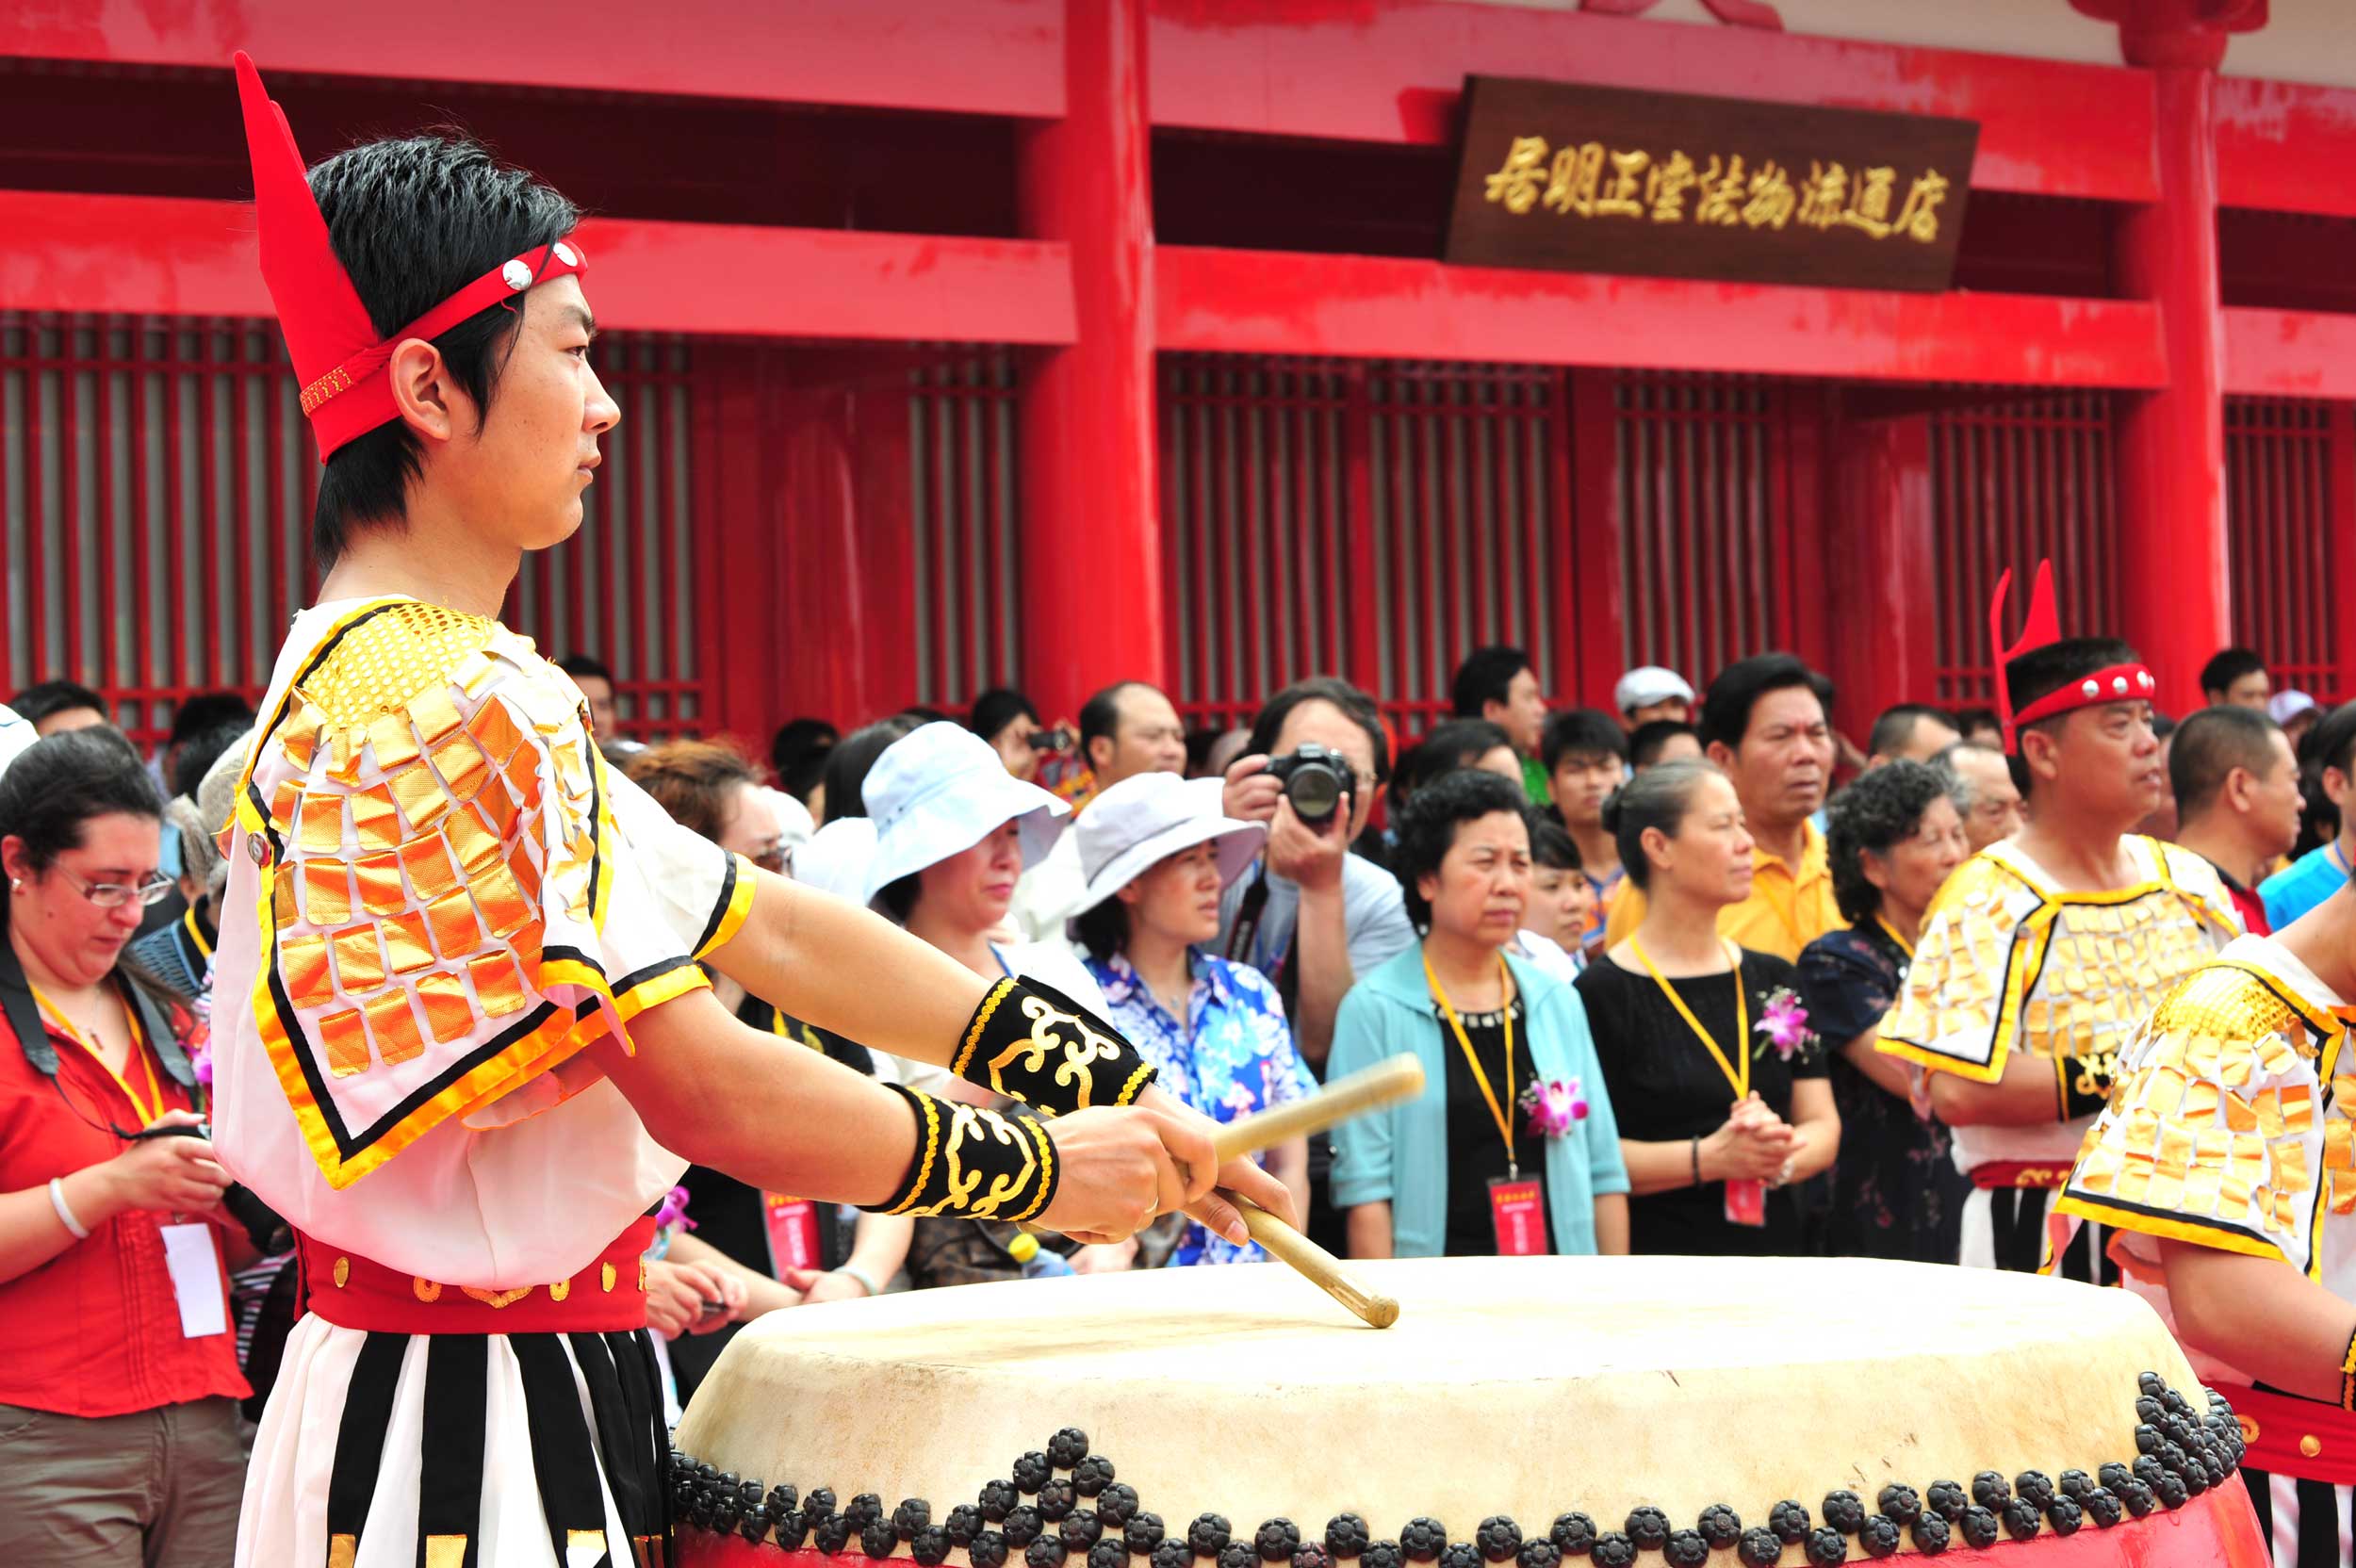 絳州大鼓是日本太鼓的祖先，誕生於唐代，與唐密同歲，均有一千二百年的歷史，這次密法歸華活動，被邀請作嘉賓演出。2